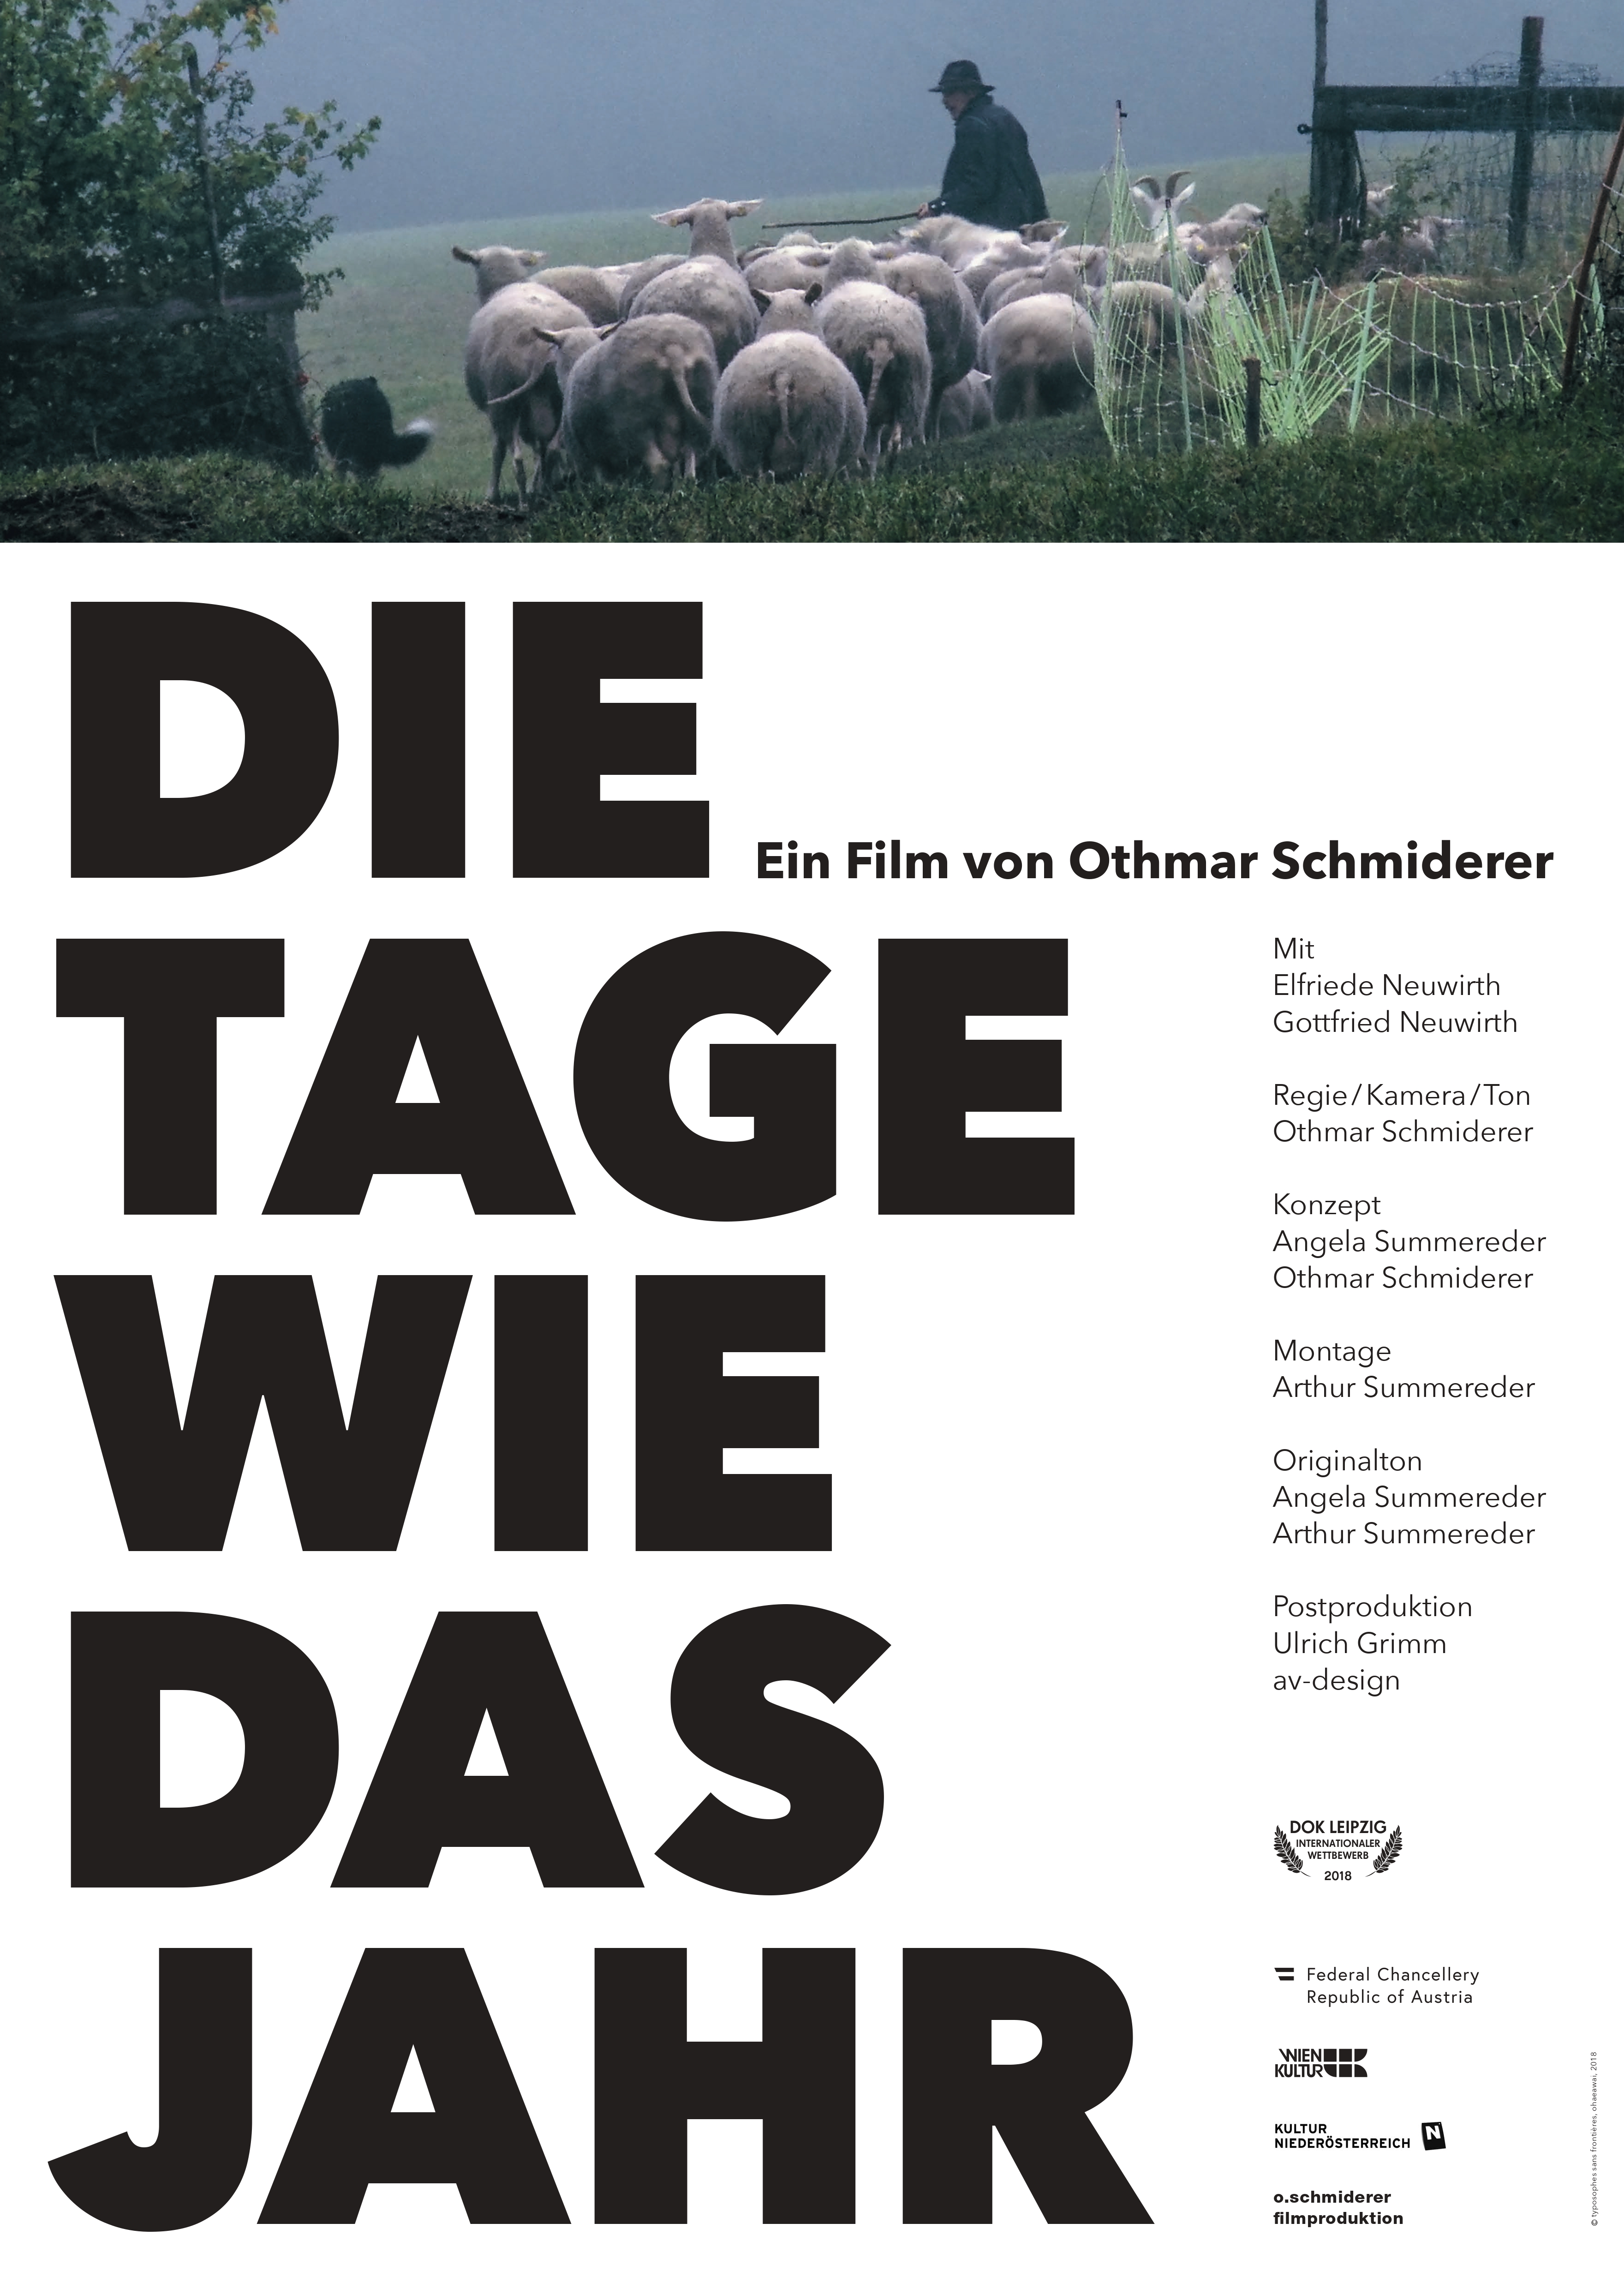 Othmar Schmiderer Filmproduktion